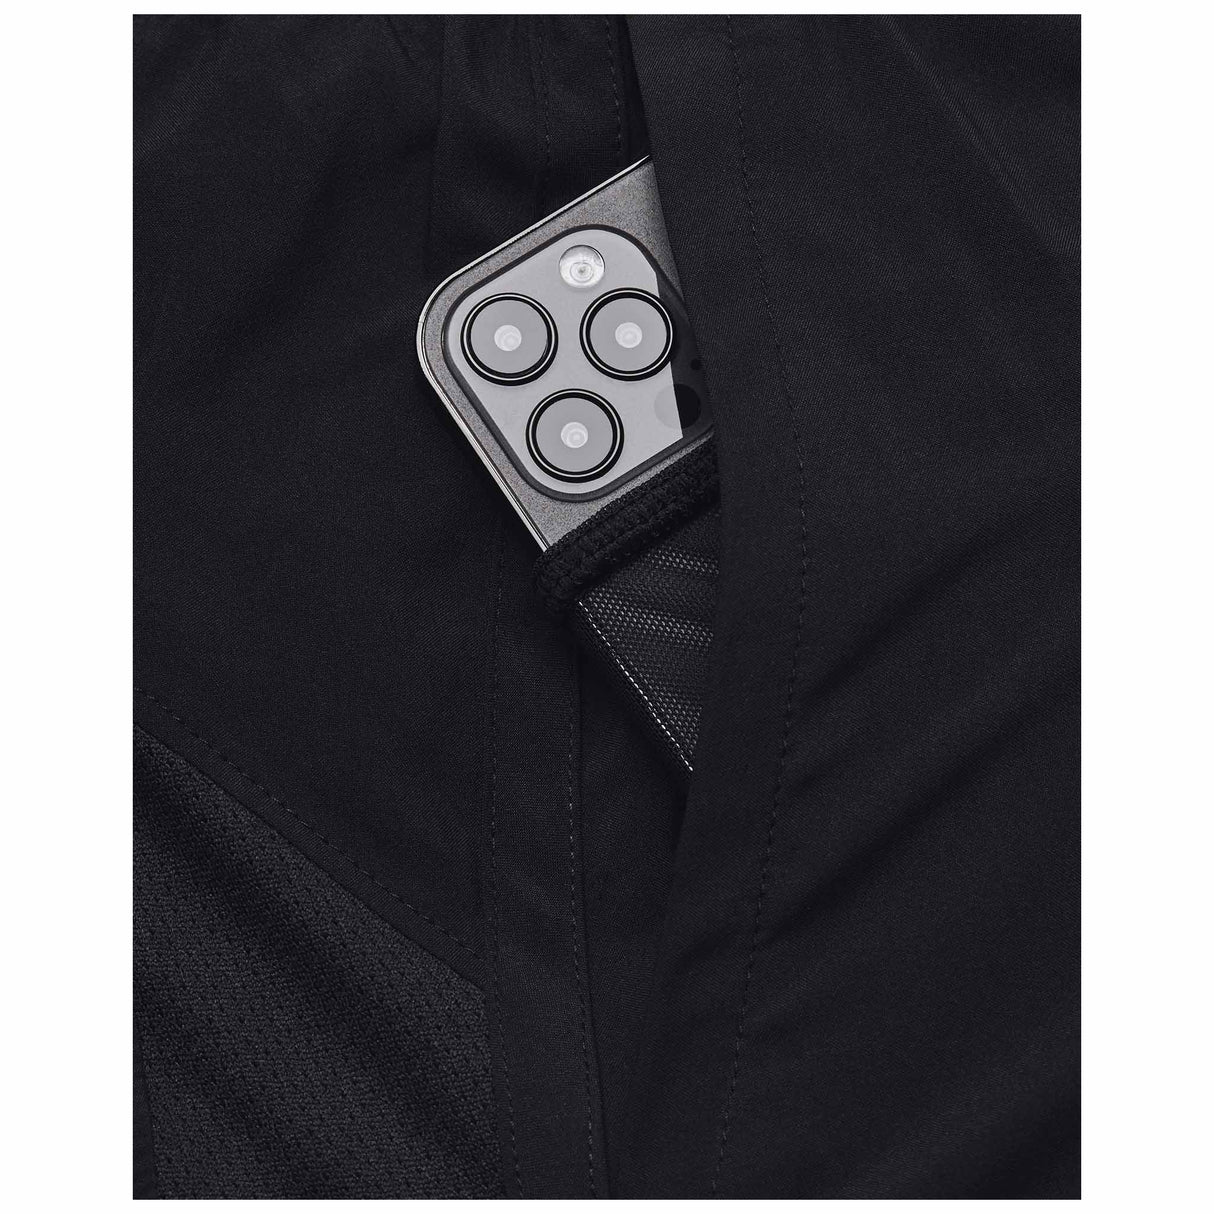 Under Armour Launch shorts homme 7 pouces poche- black / reflective